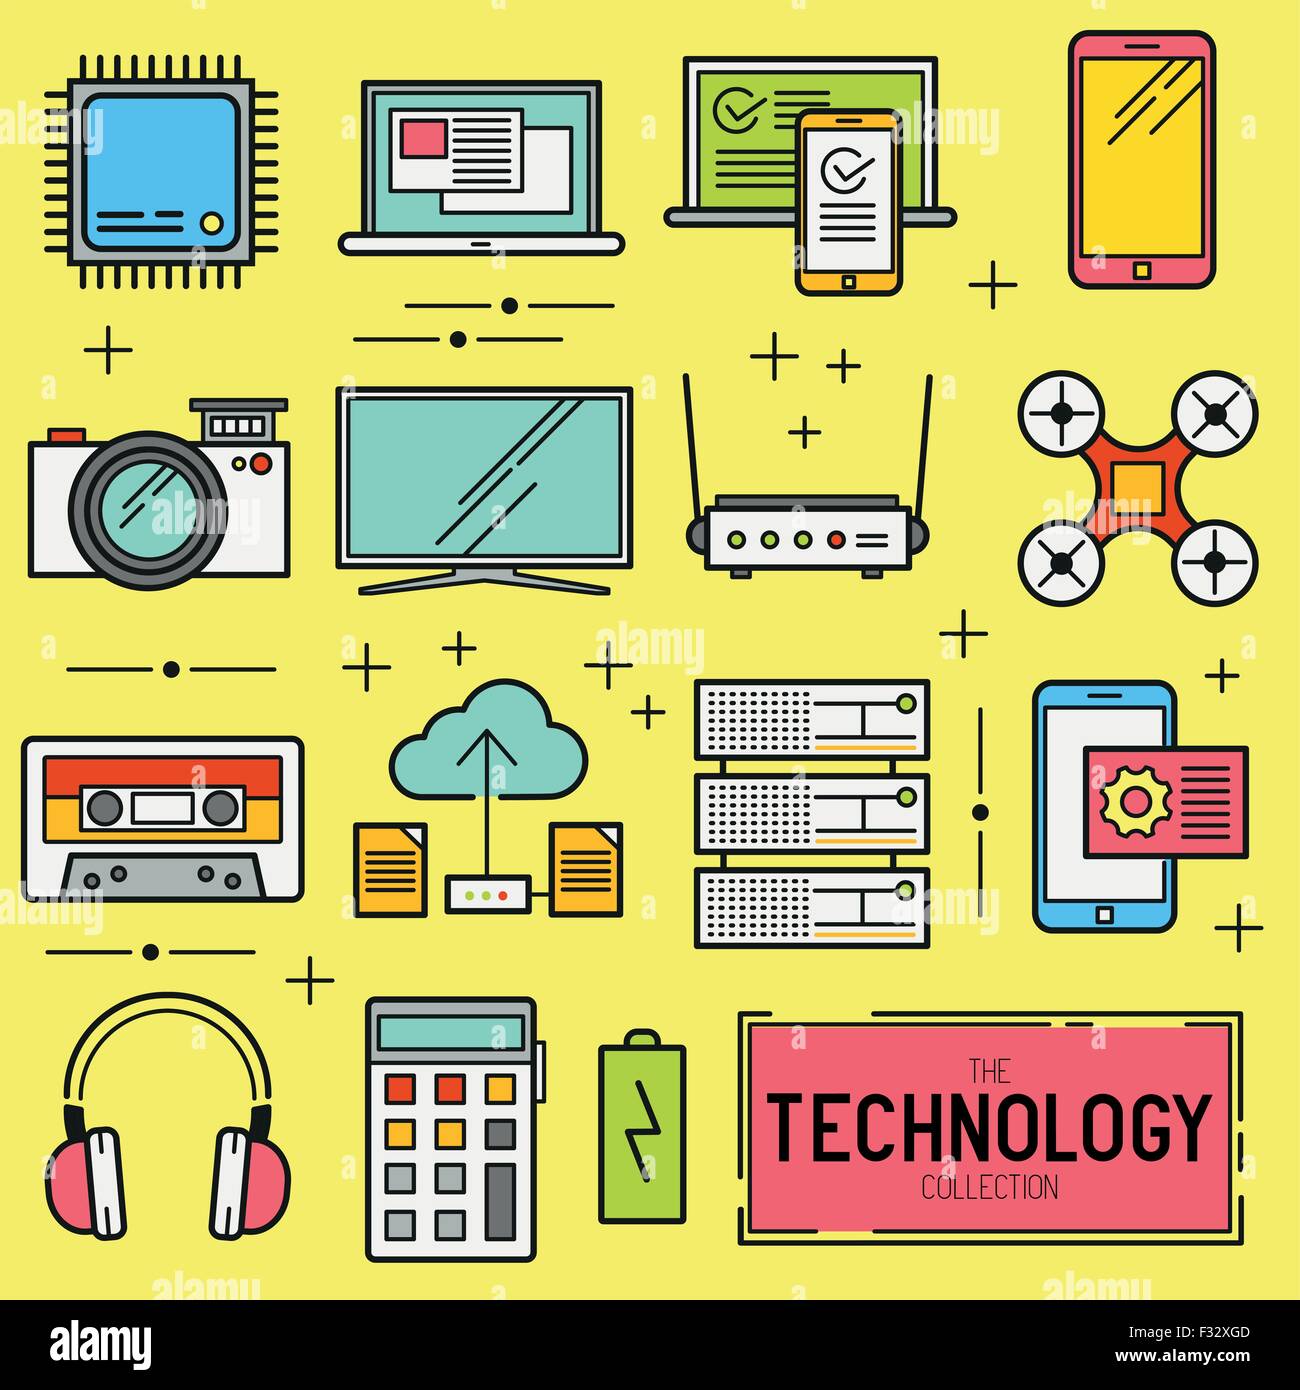 Technologie-Vektor-Icon-Set. Eine Sammlung von moderner Technologie Elemente wie eine CPU, Drohne, TV und mobile Geräte. Vektor Stock Vektor